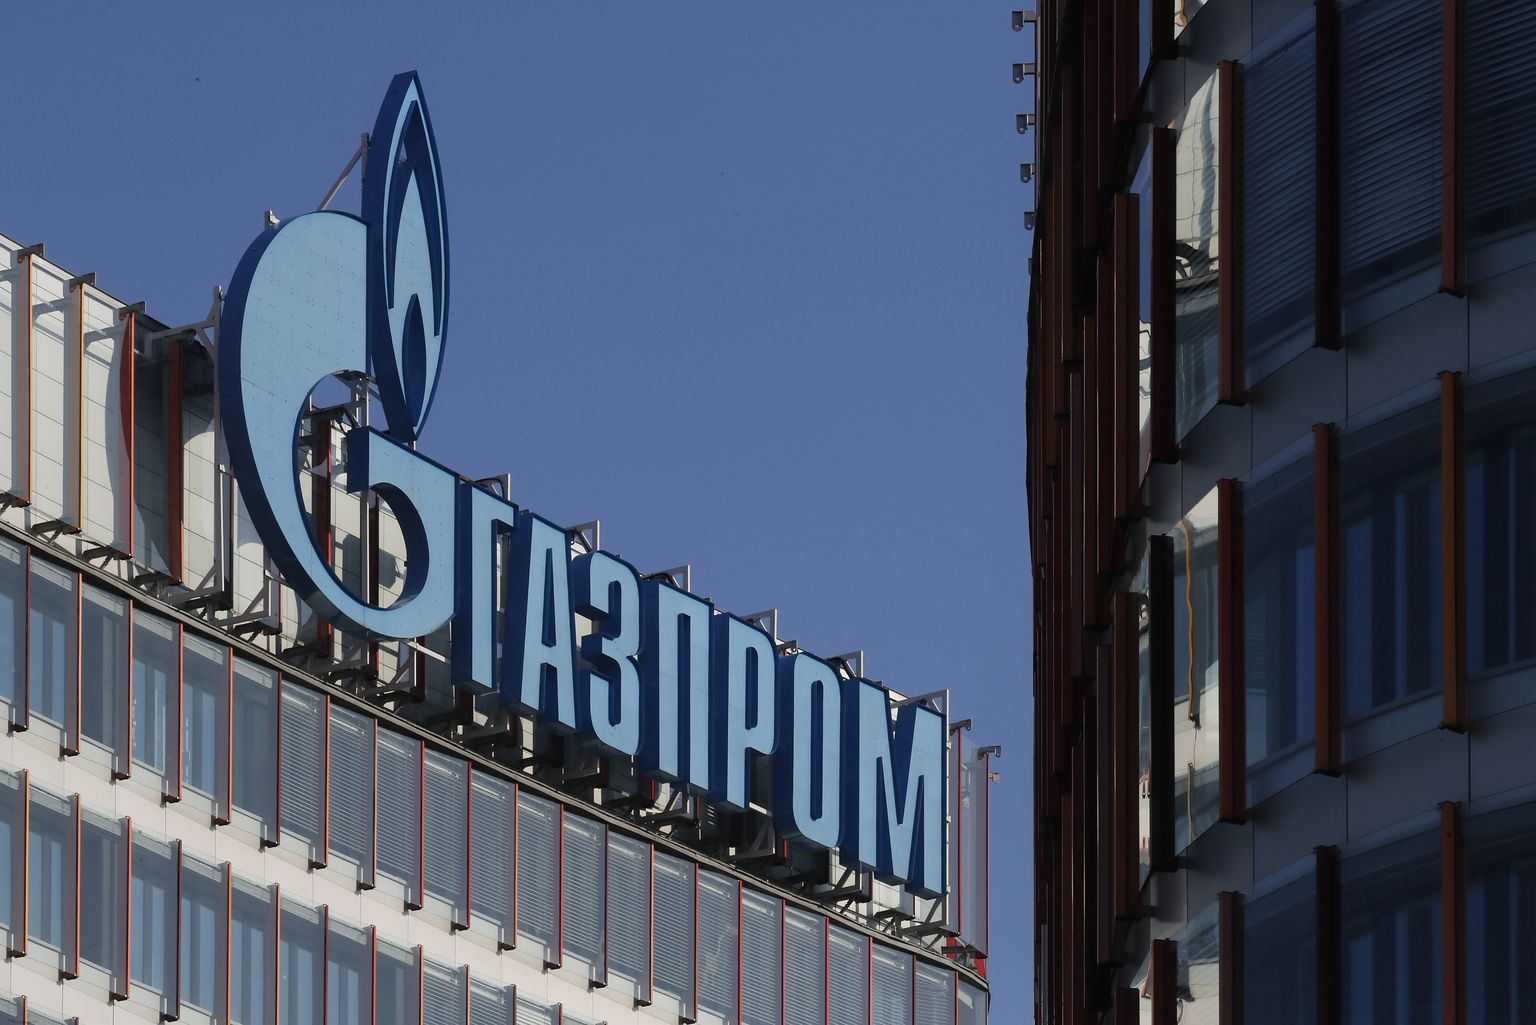 "Газпром"